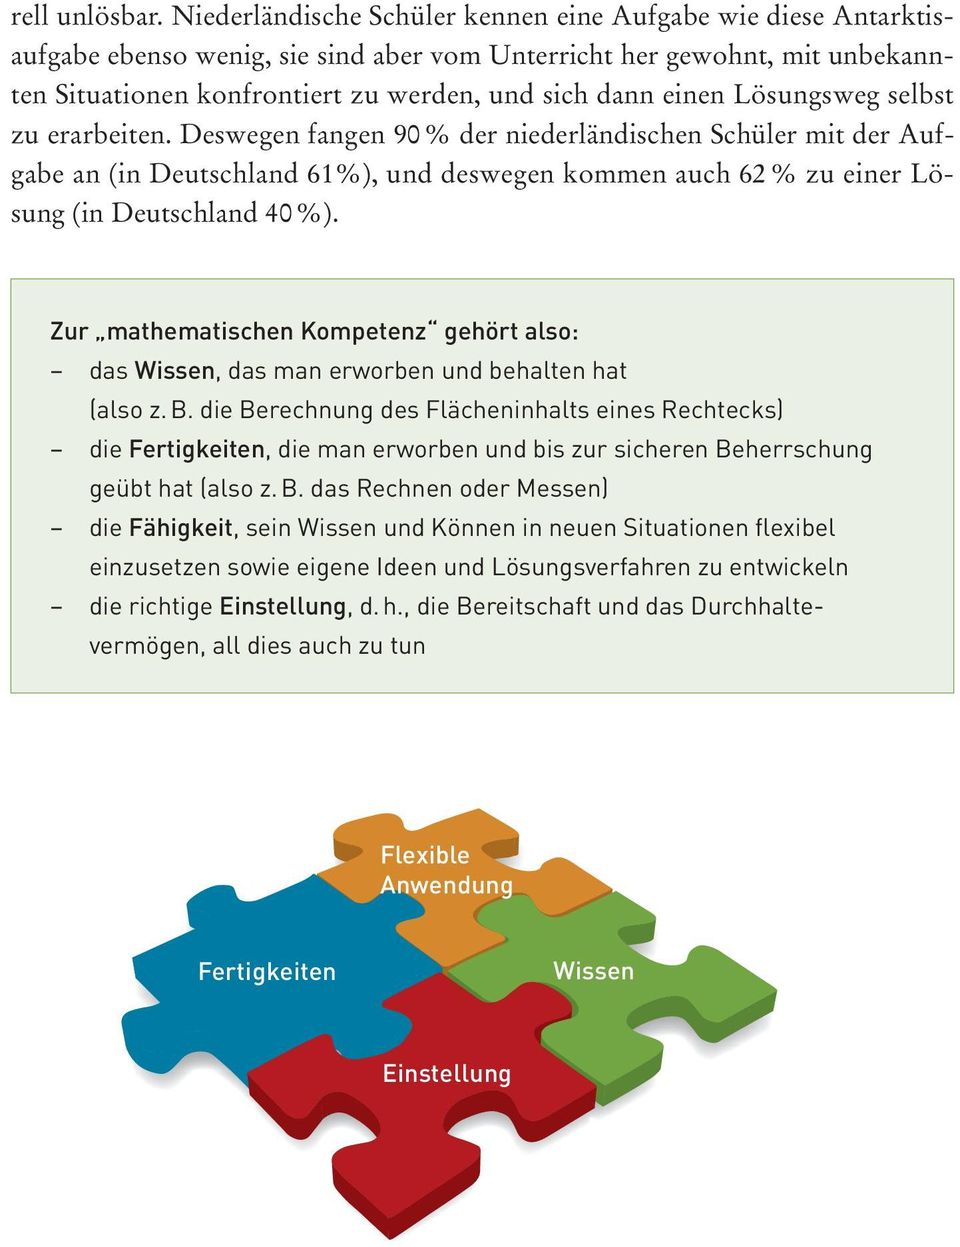 Lösungsweg selbst zu erarbeiten. Deswegen fangen 90 % der niederländischen Schüler mit der Aufgabe an (in Deutschland 61%), und deswegen kommen auch 62 % zu einer Lösung (in Deutschland 40 %).